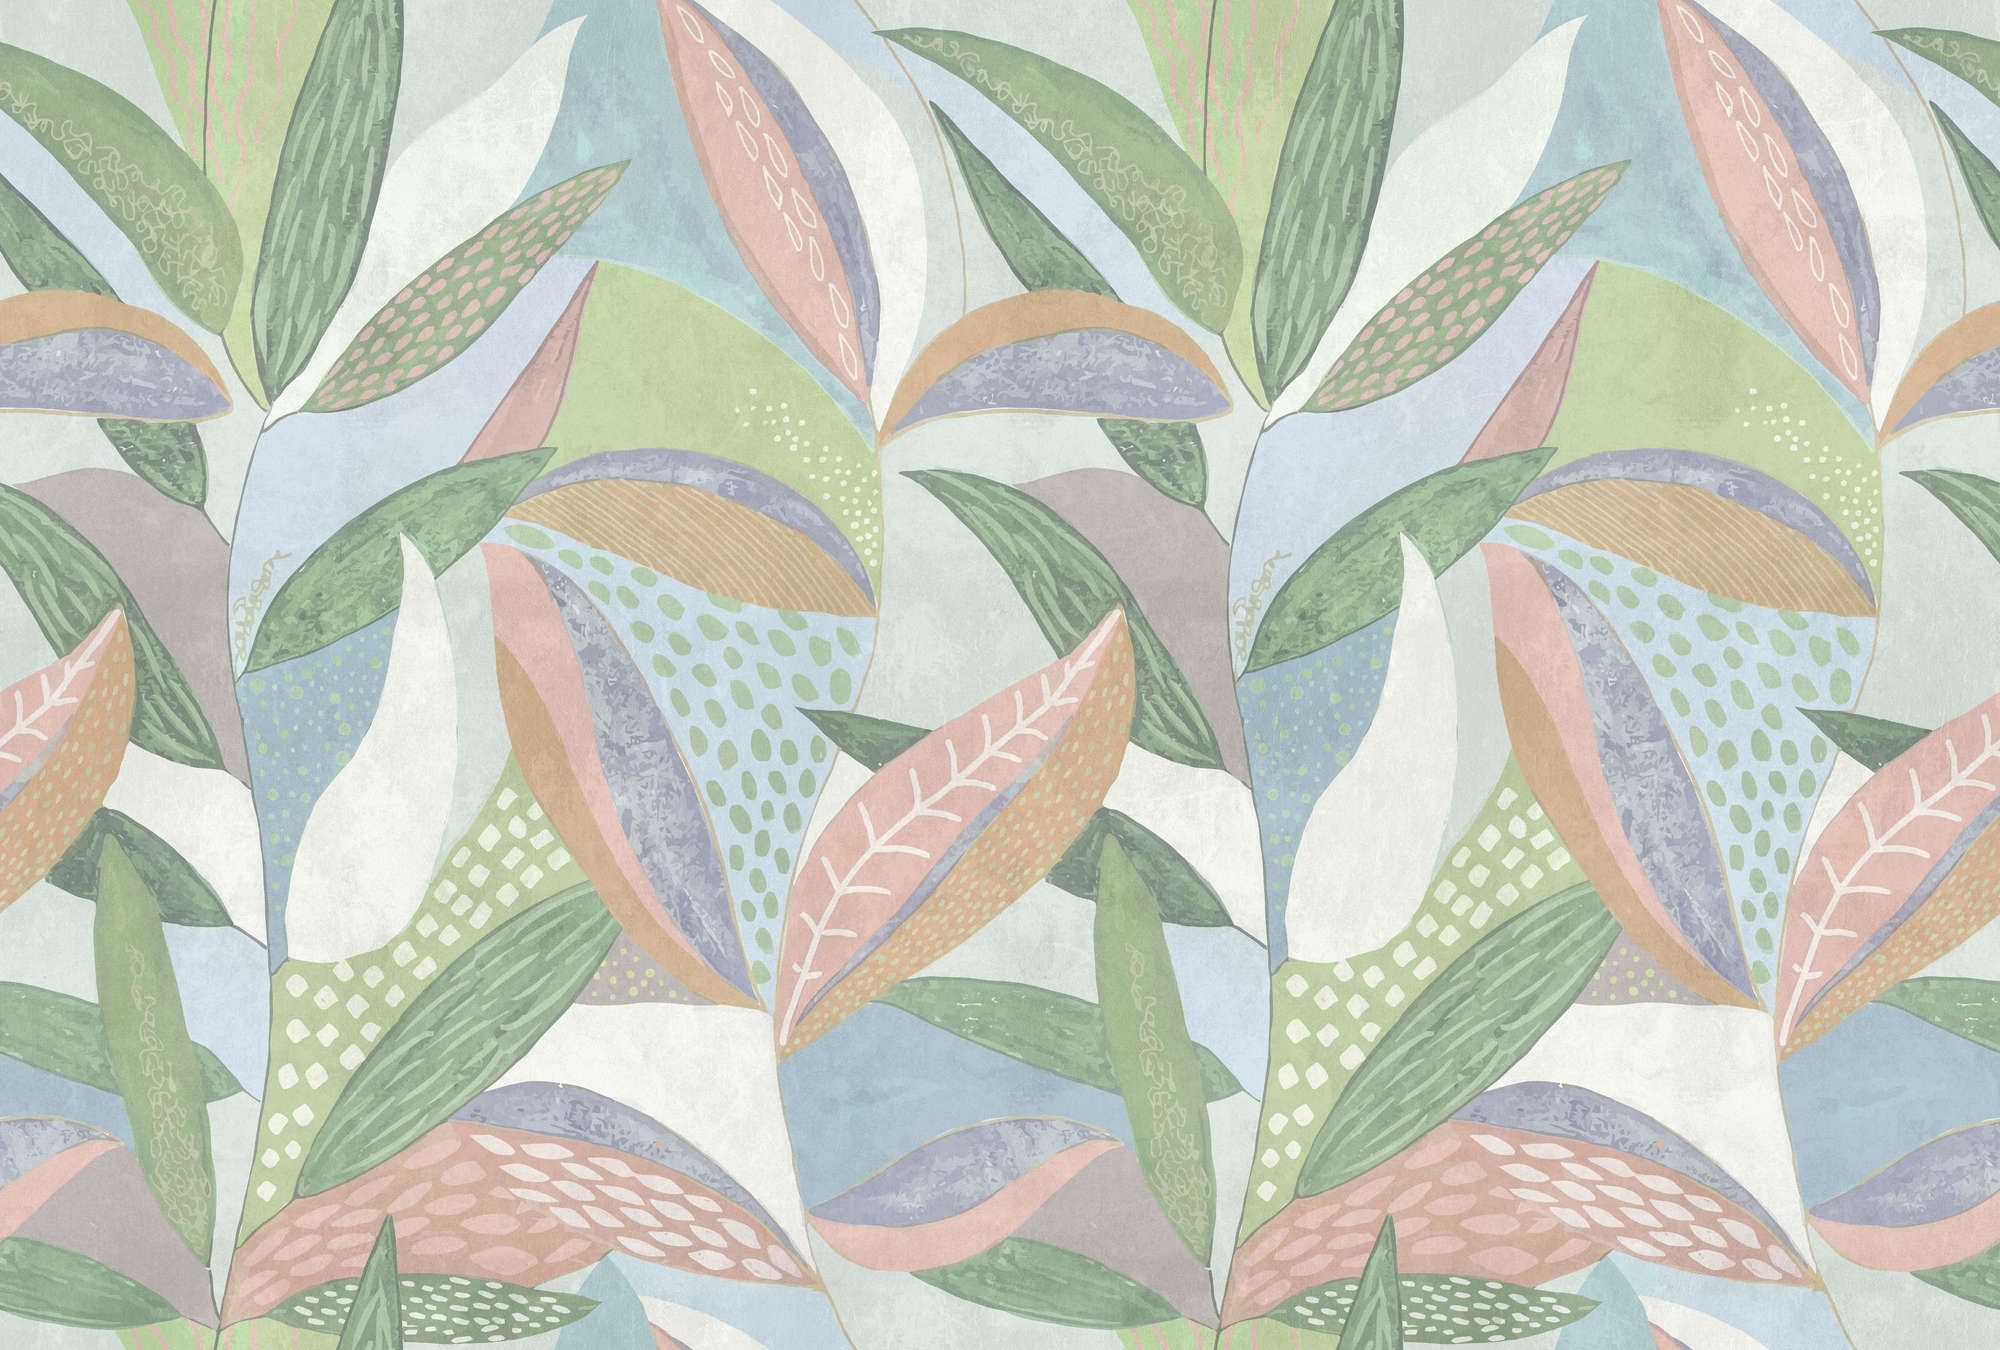             papier peint en papier panoramique »emilia« - Motif de feuilles pastel multicolores sur une structure d'enduit béton - vert, bleu, rose | Intissé premium lisse et légèrement brillant
        